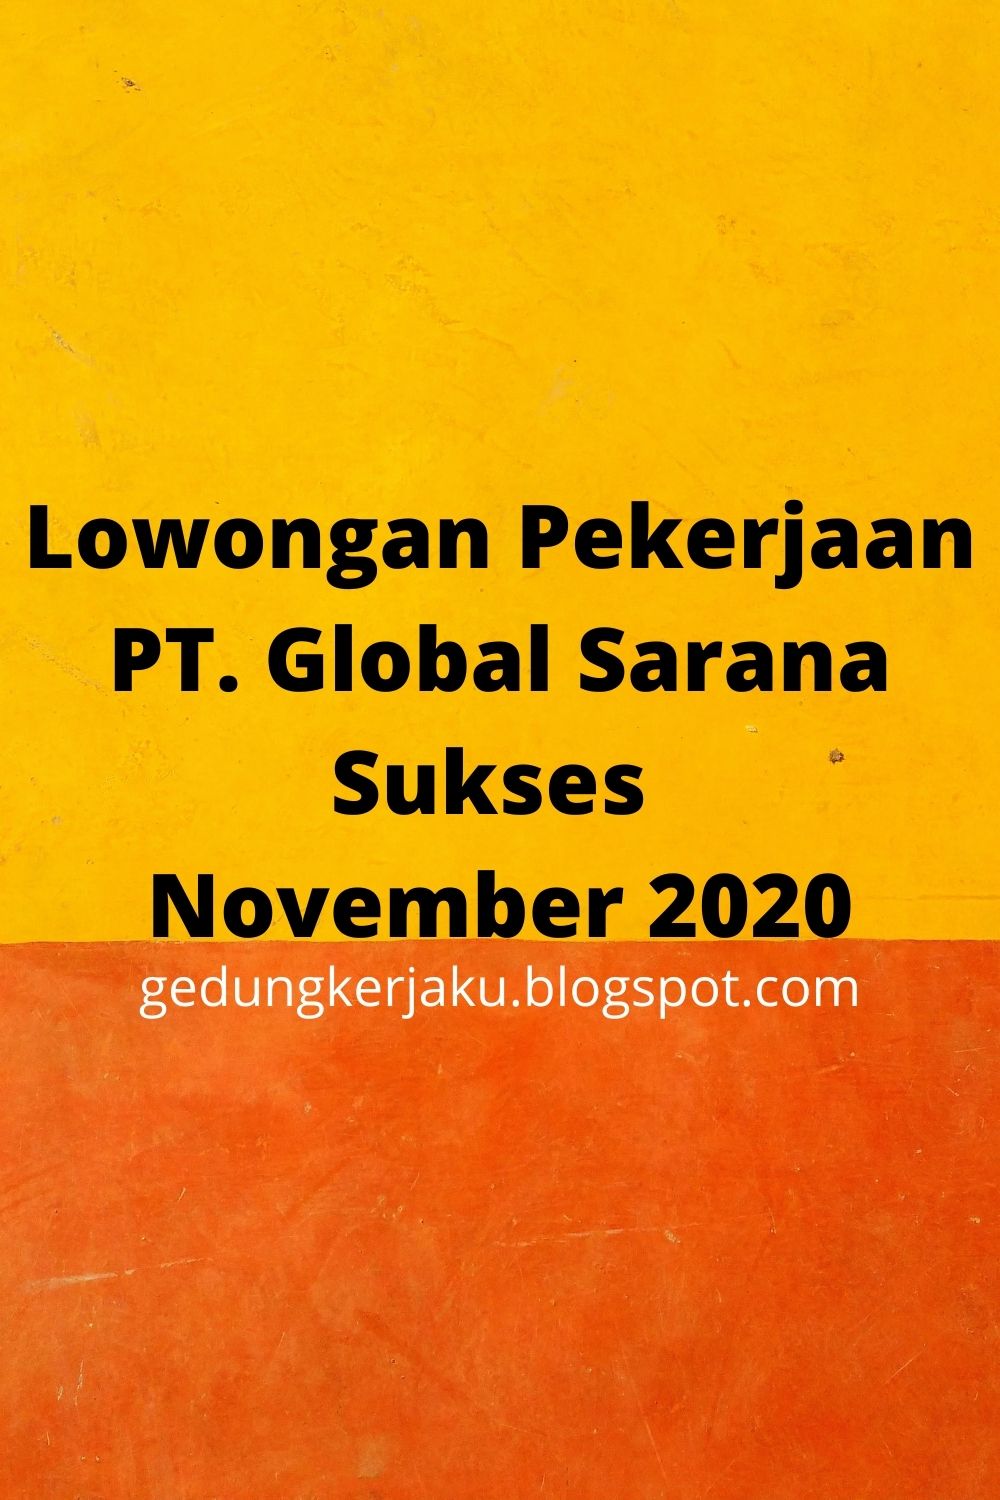 Lowongan Pekerjaan PT. Global Sarana Sukses November 2020